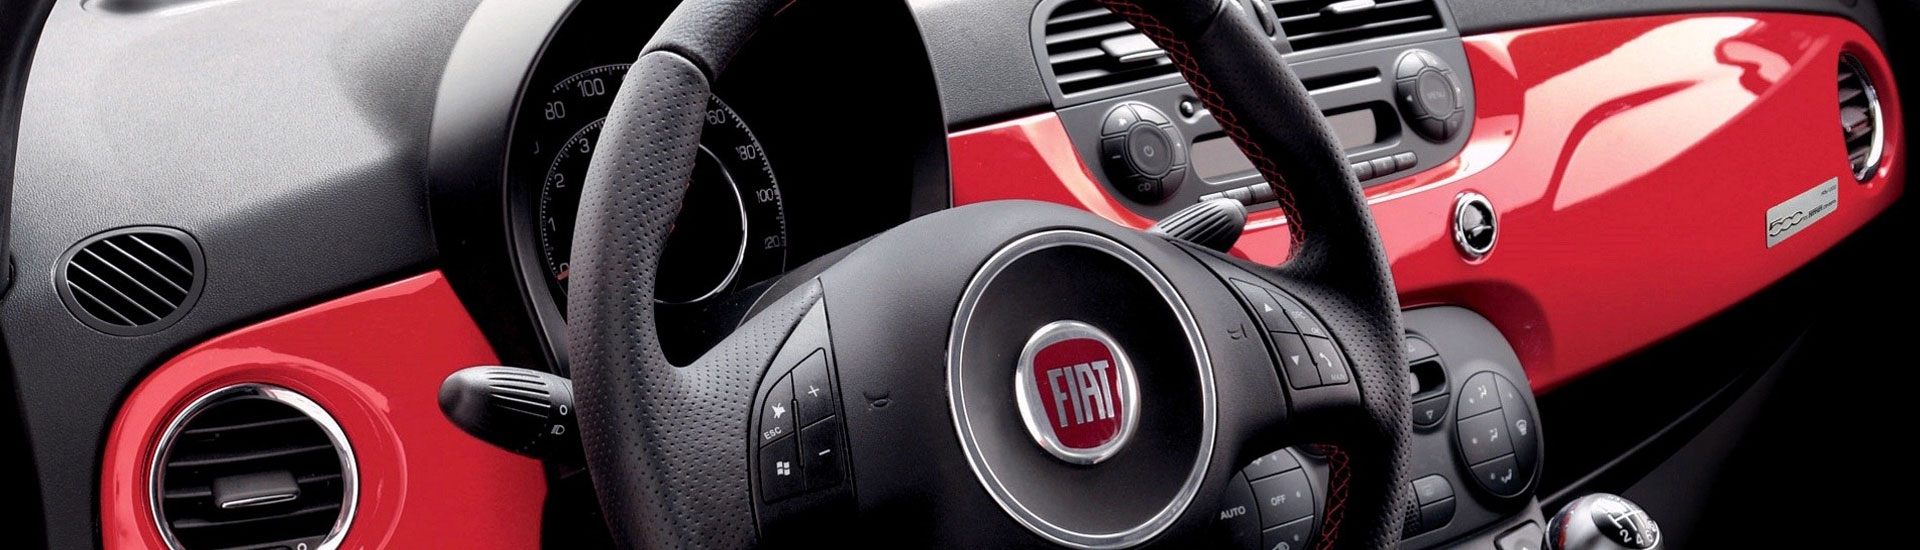 2016 Fiat 500e Custom Dash Kits